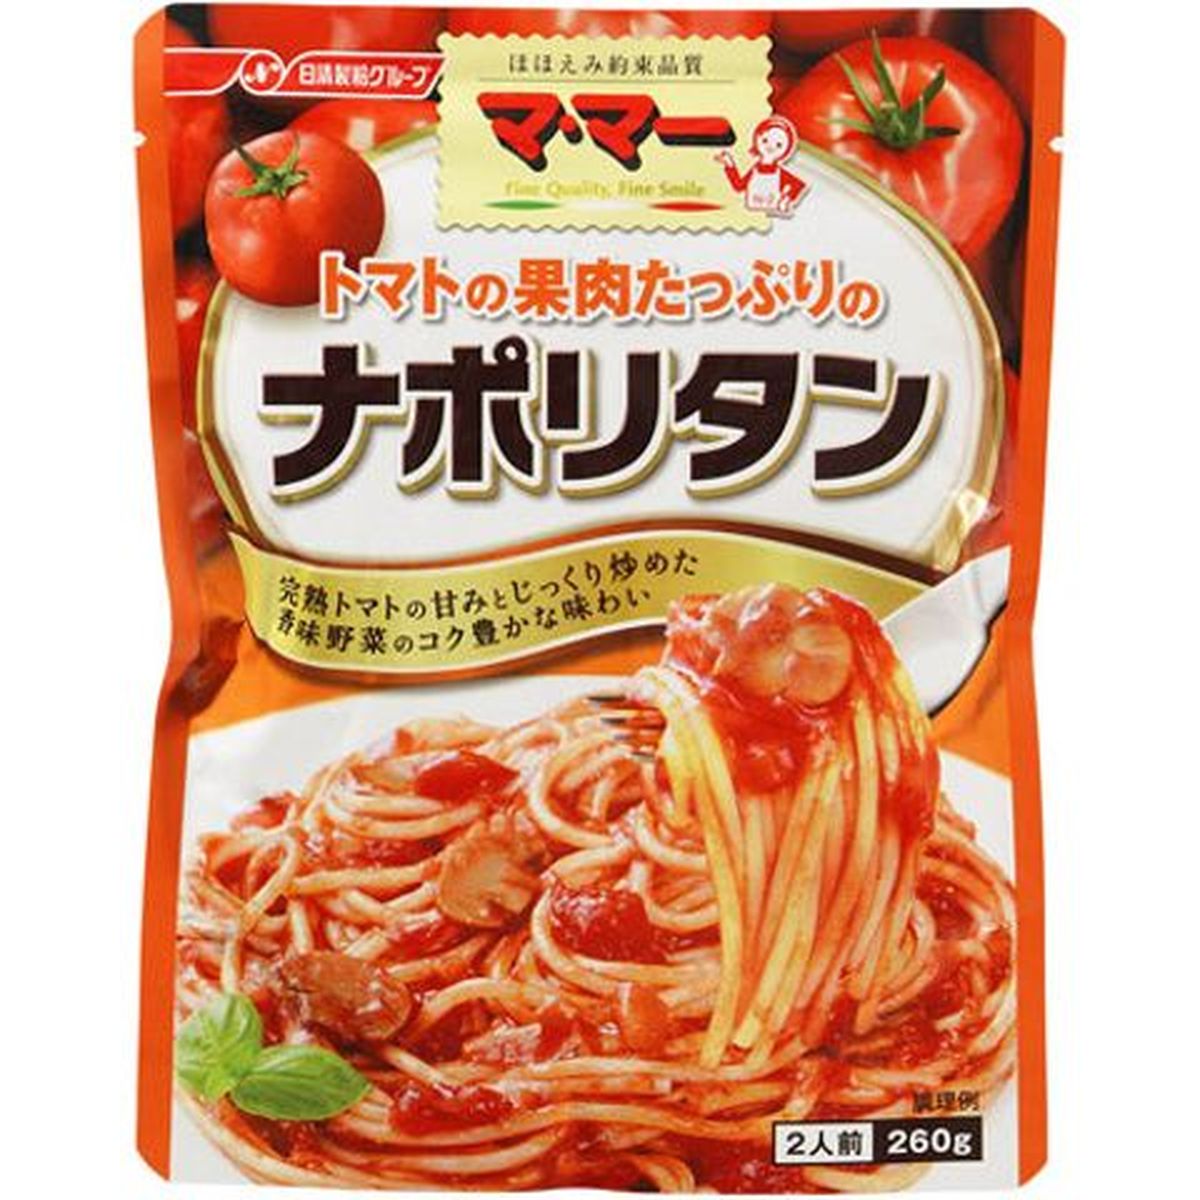 【6個入リ】ママー トマトノ果肉タップリノナポリタン 260g